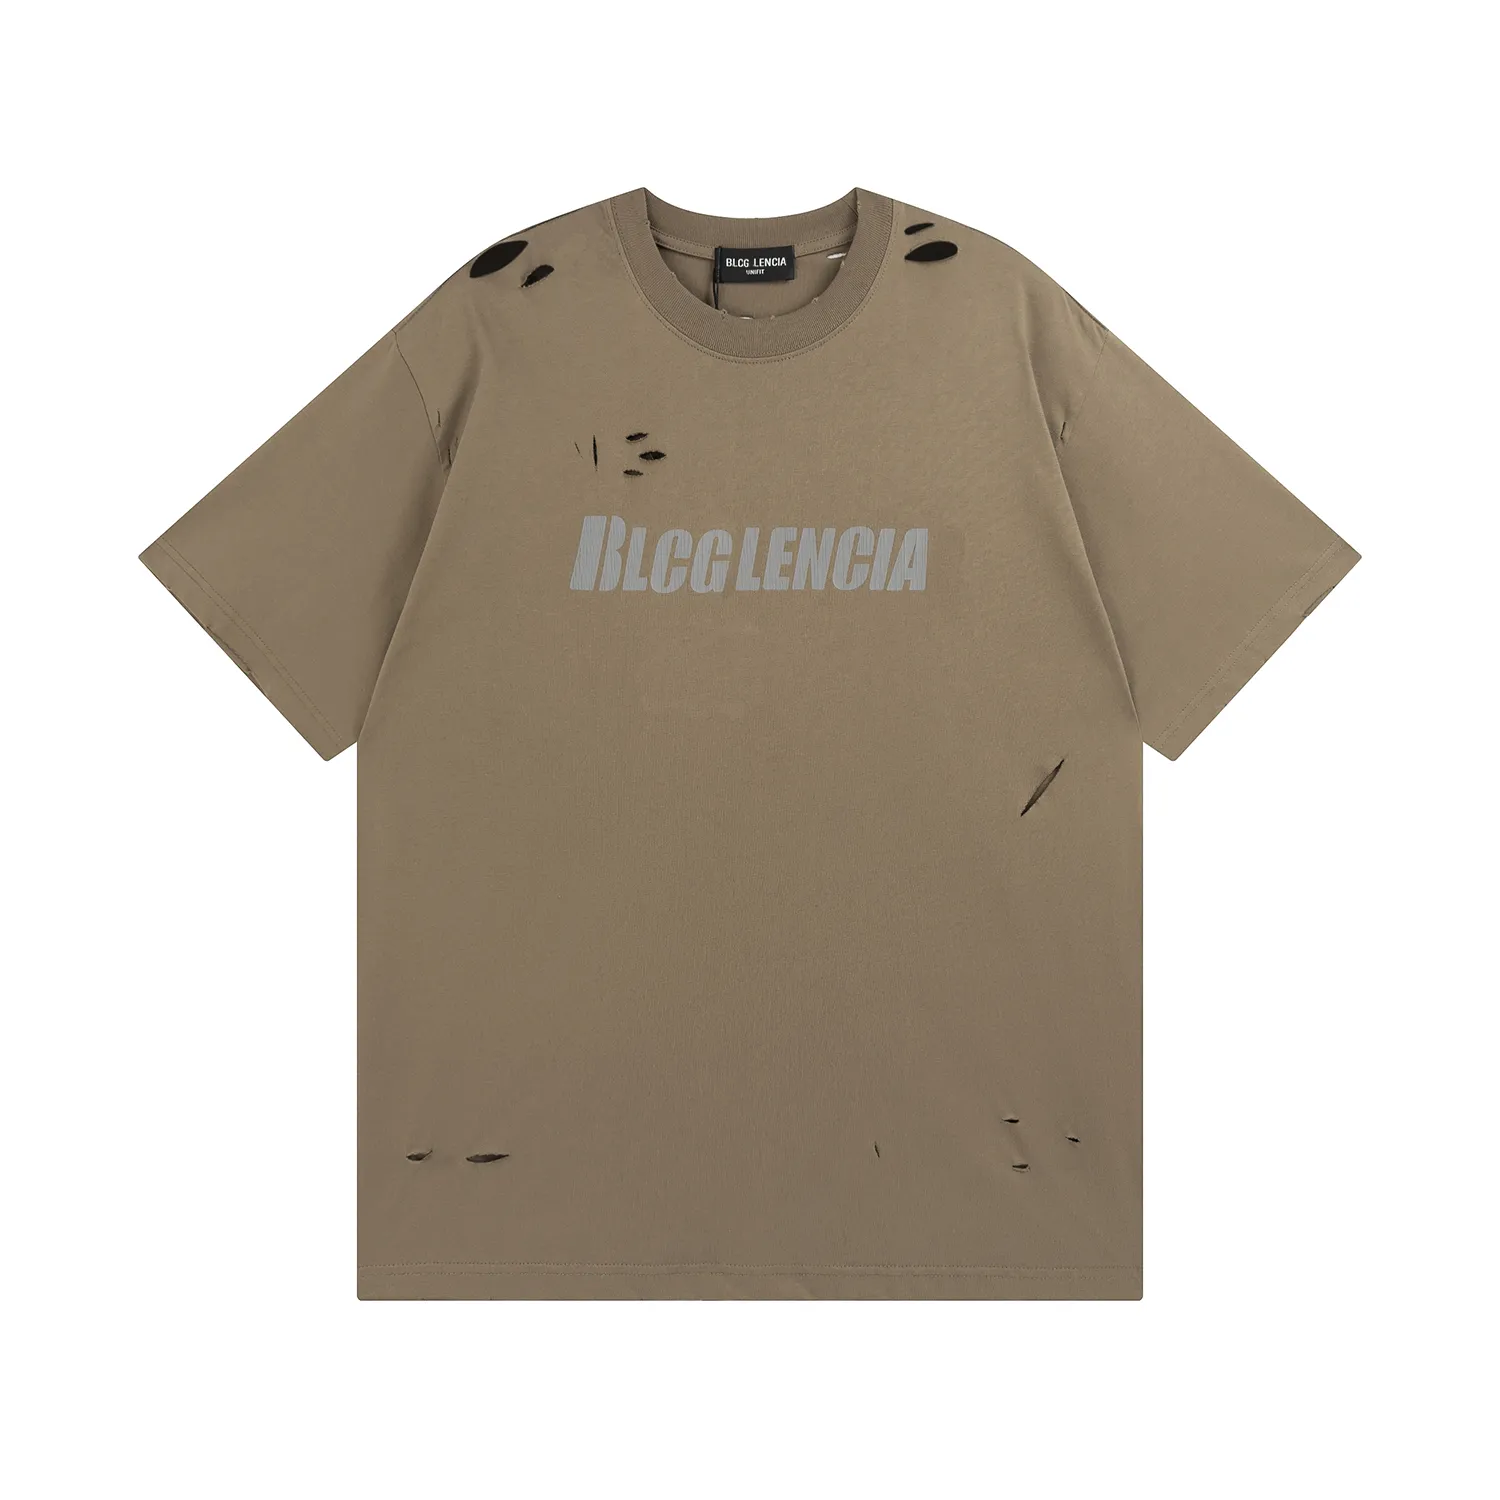 BLCG LENCIA 2023 été nouveau 250g 100% coton tissu T-shirt hommes haute qualité impression couleur goutte manches lâche t-shirts surdimensionnés hauts 2023193